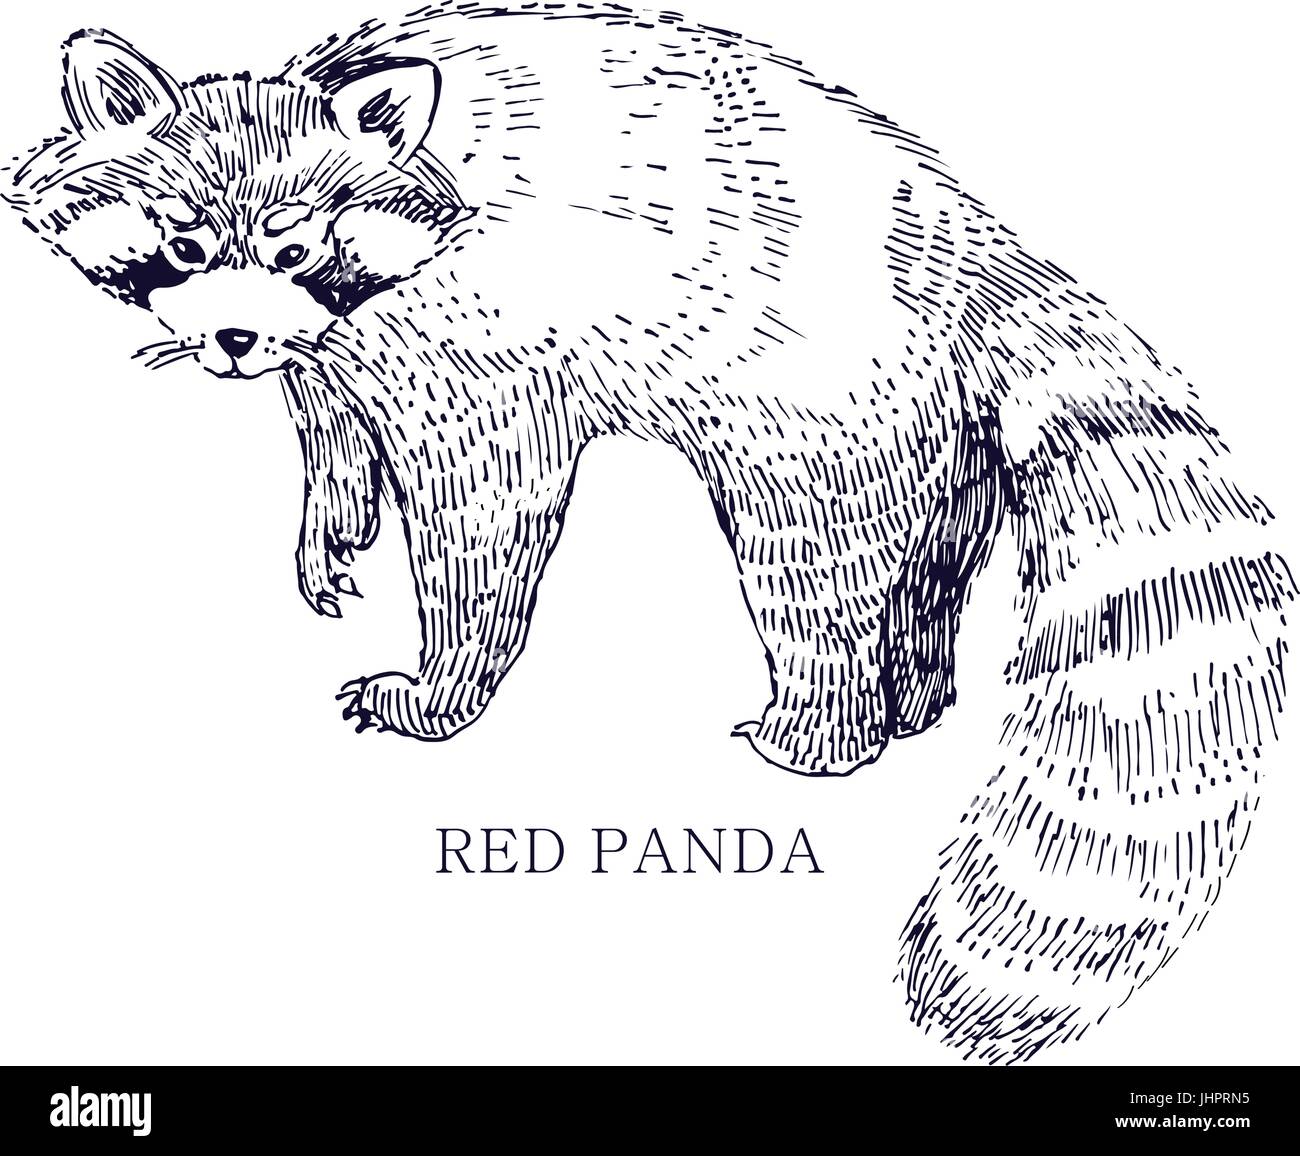 Le panda rouge, animal rare, état de conservation Illustration de Vecteur